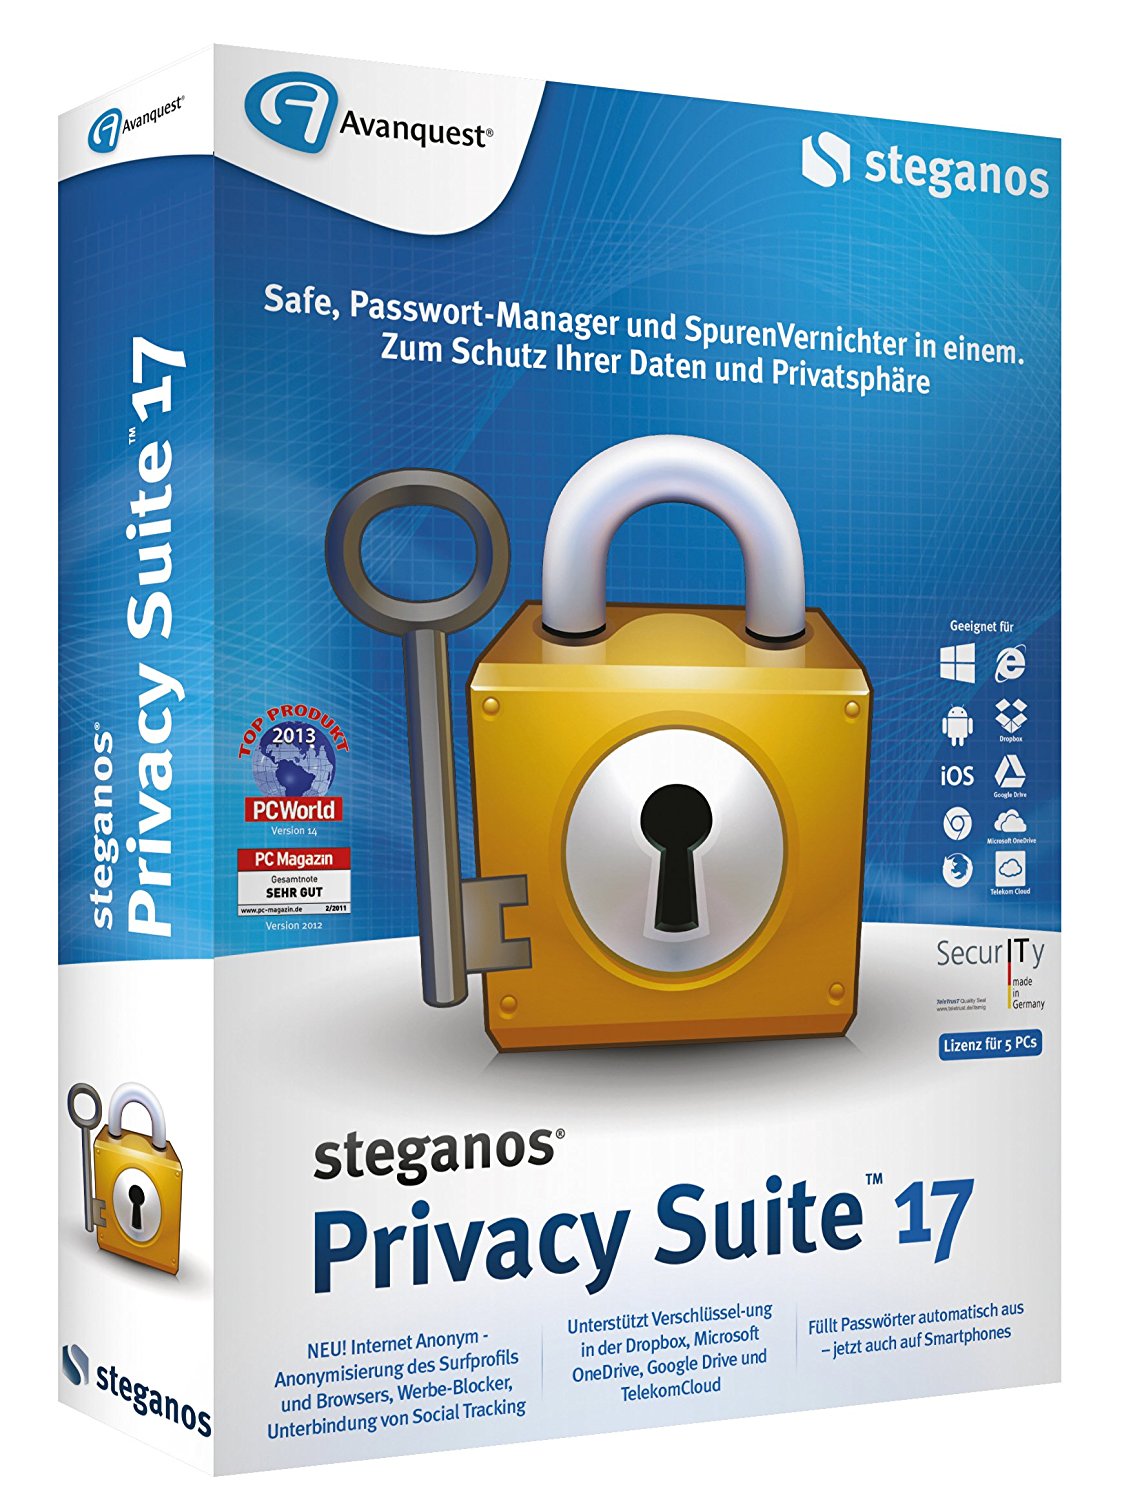 Steganos Privacy Suite 17 Safe, Passwort-Manager - Zum Schutz Ihrer Daten und Privatspähre, Software